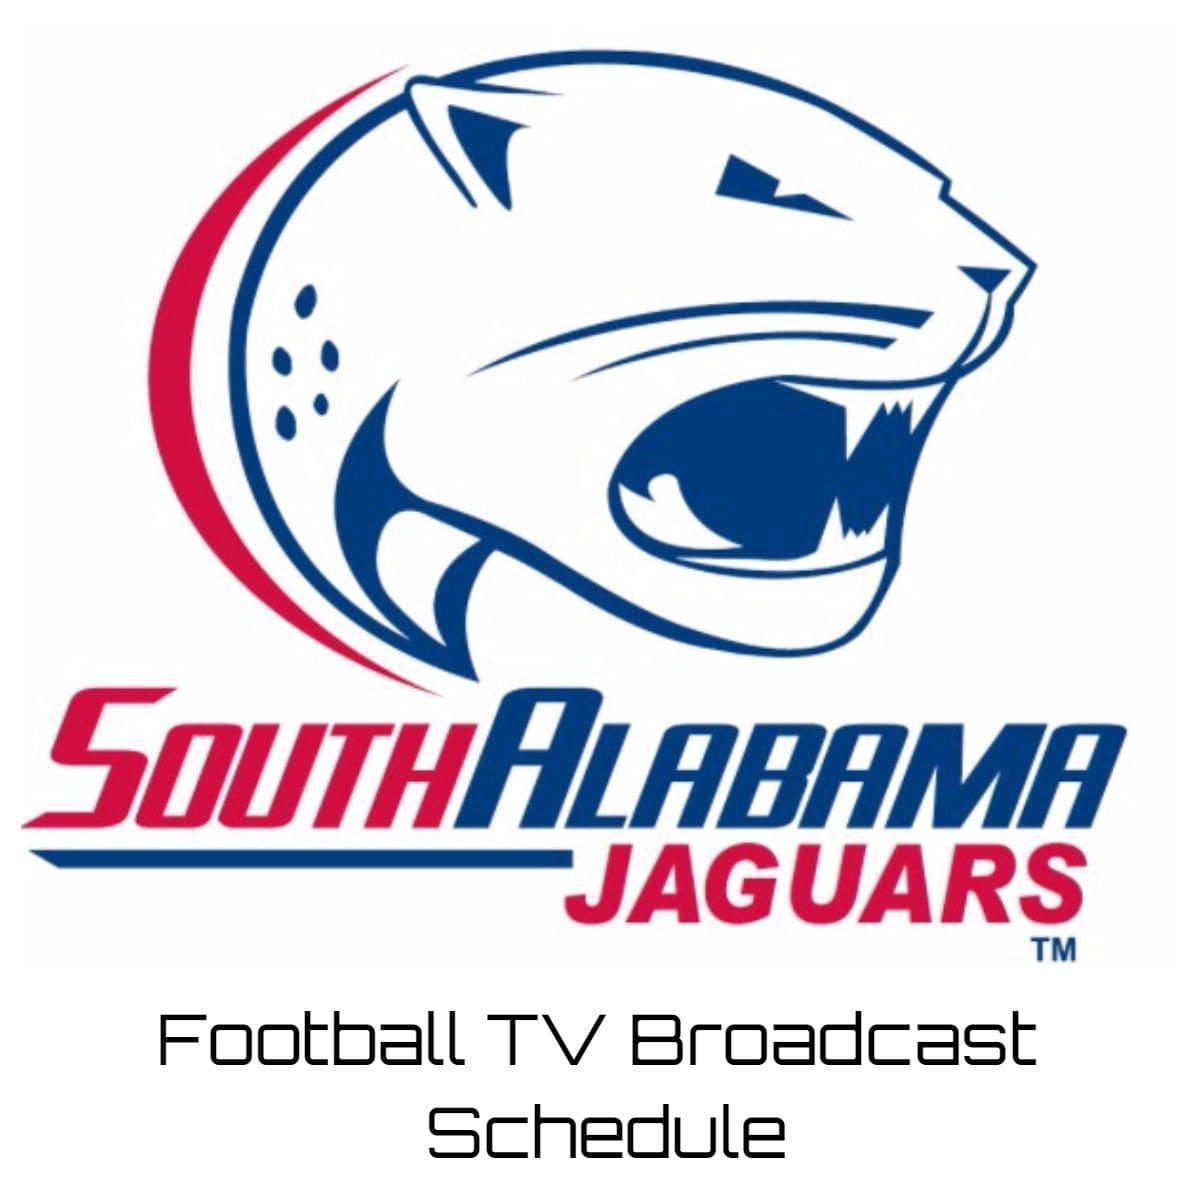 South Alabama Jaguars Football TV Broadcast Schedule